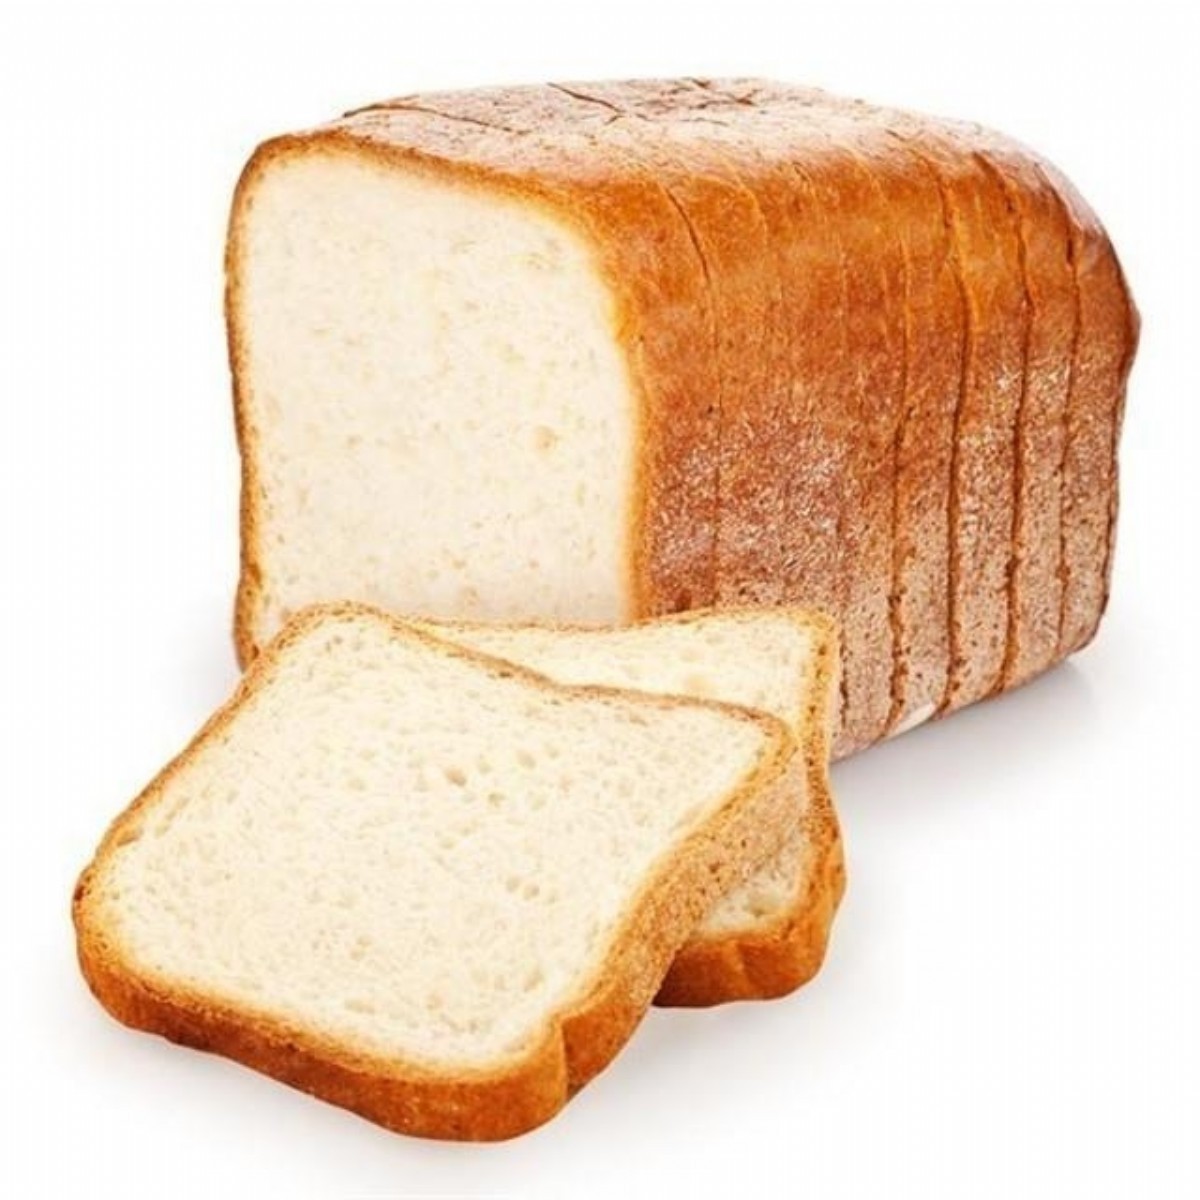 Glutensiz Ekmekler | Liva Glutensiz Tost Ekmek (750 g) | GEU1004 | Glutensiz Tost Ekmeği, Livaglutensiz Glutensiz Tost Ekmeği, Glutensiz Ekmek | 